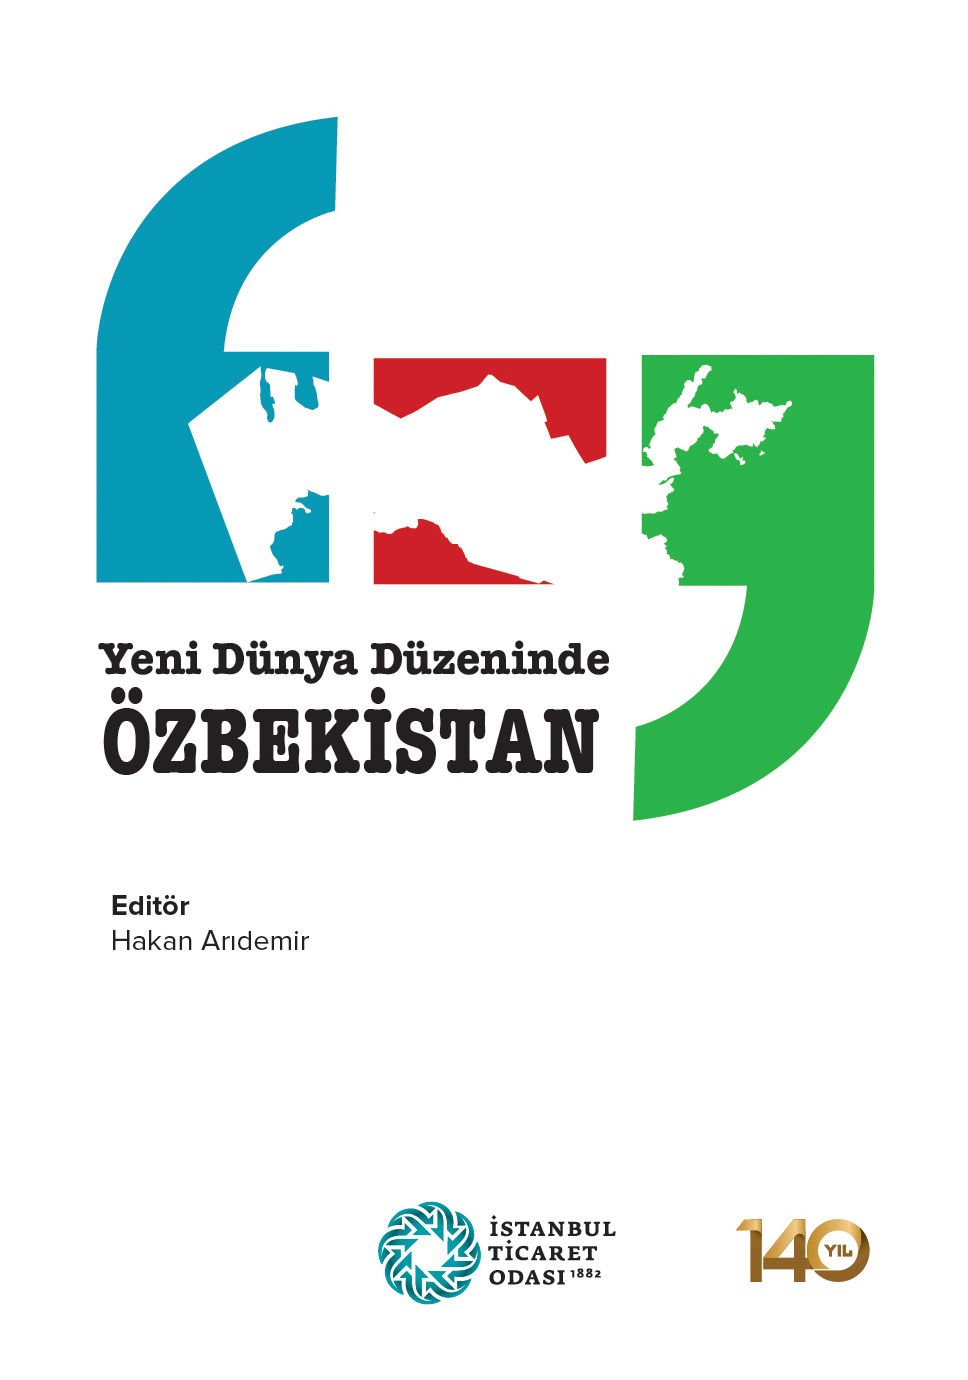 Yeni Dünya Düzeninde Özbekistan